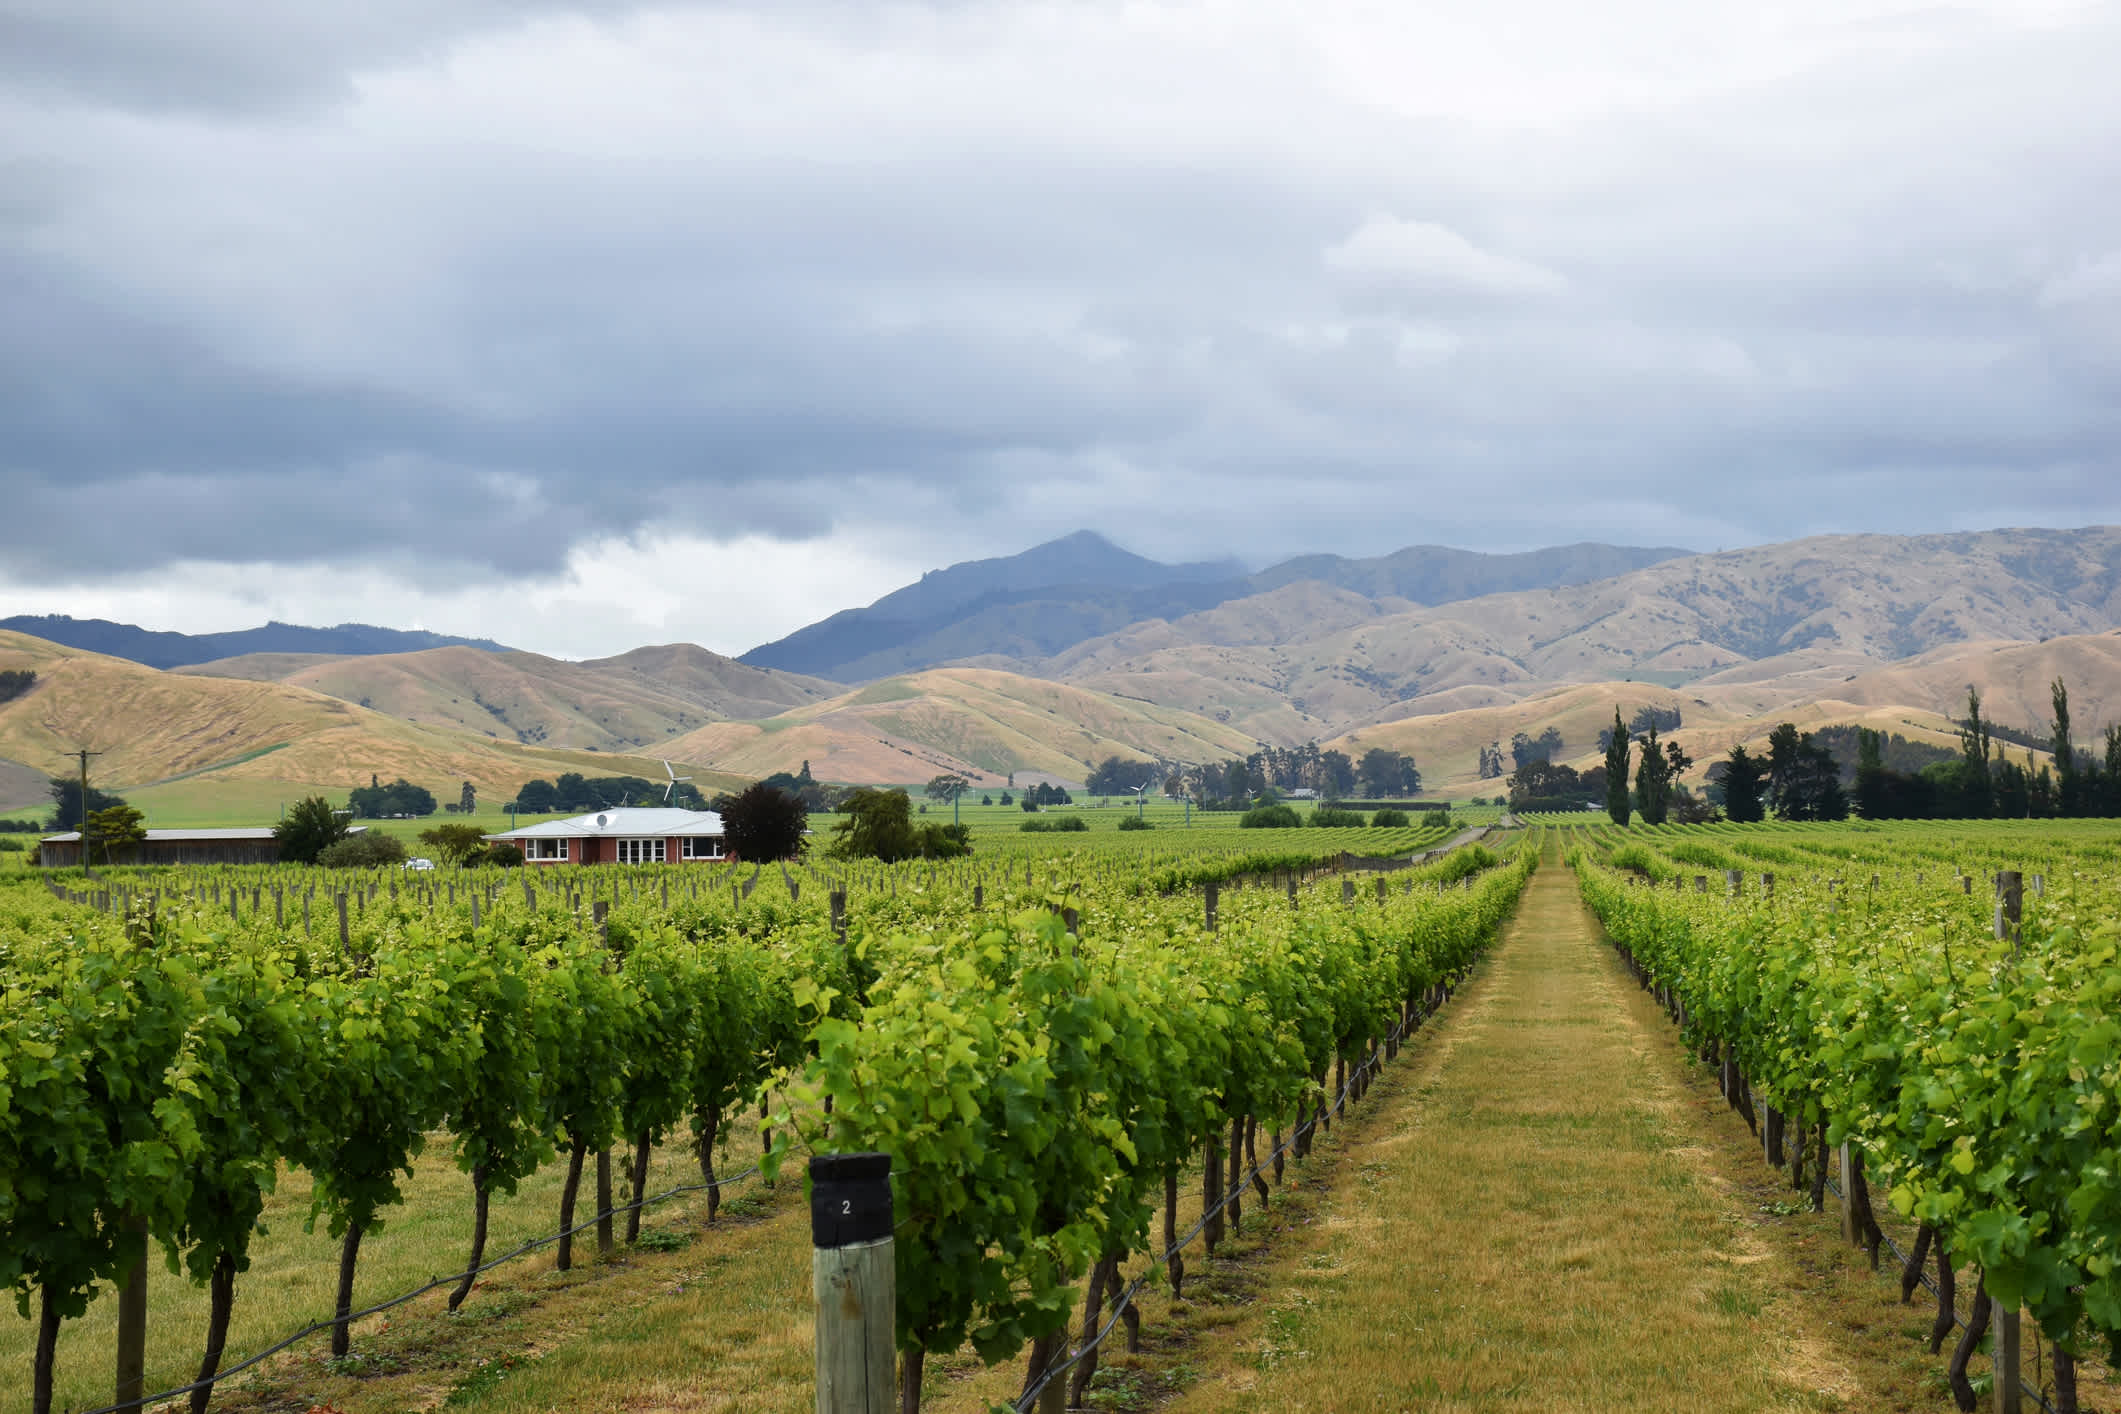 Vignobles près de Blenheim dans la région viticole de Marlborough, Nouvelle-Zélande.

